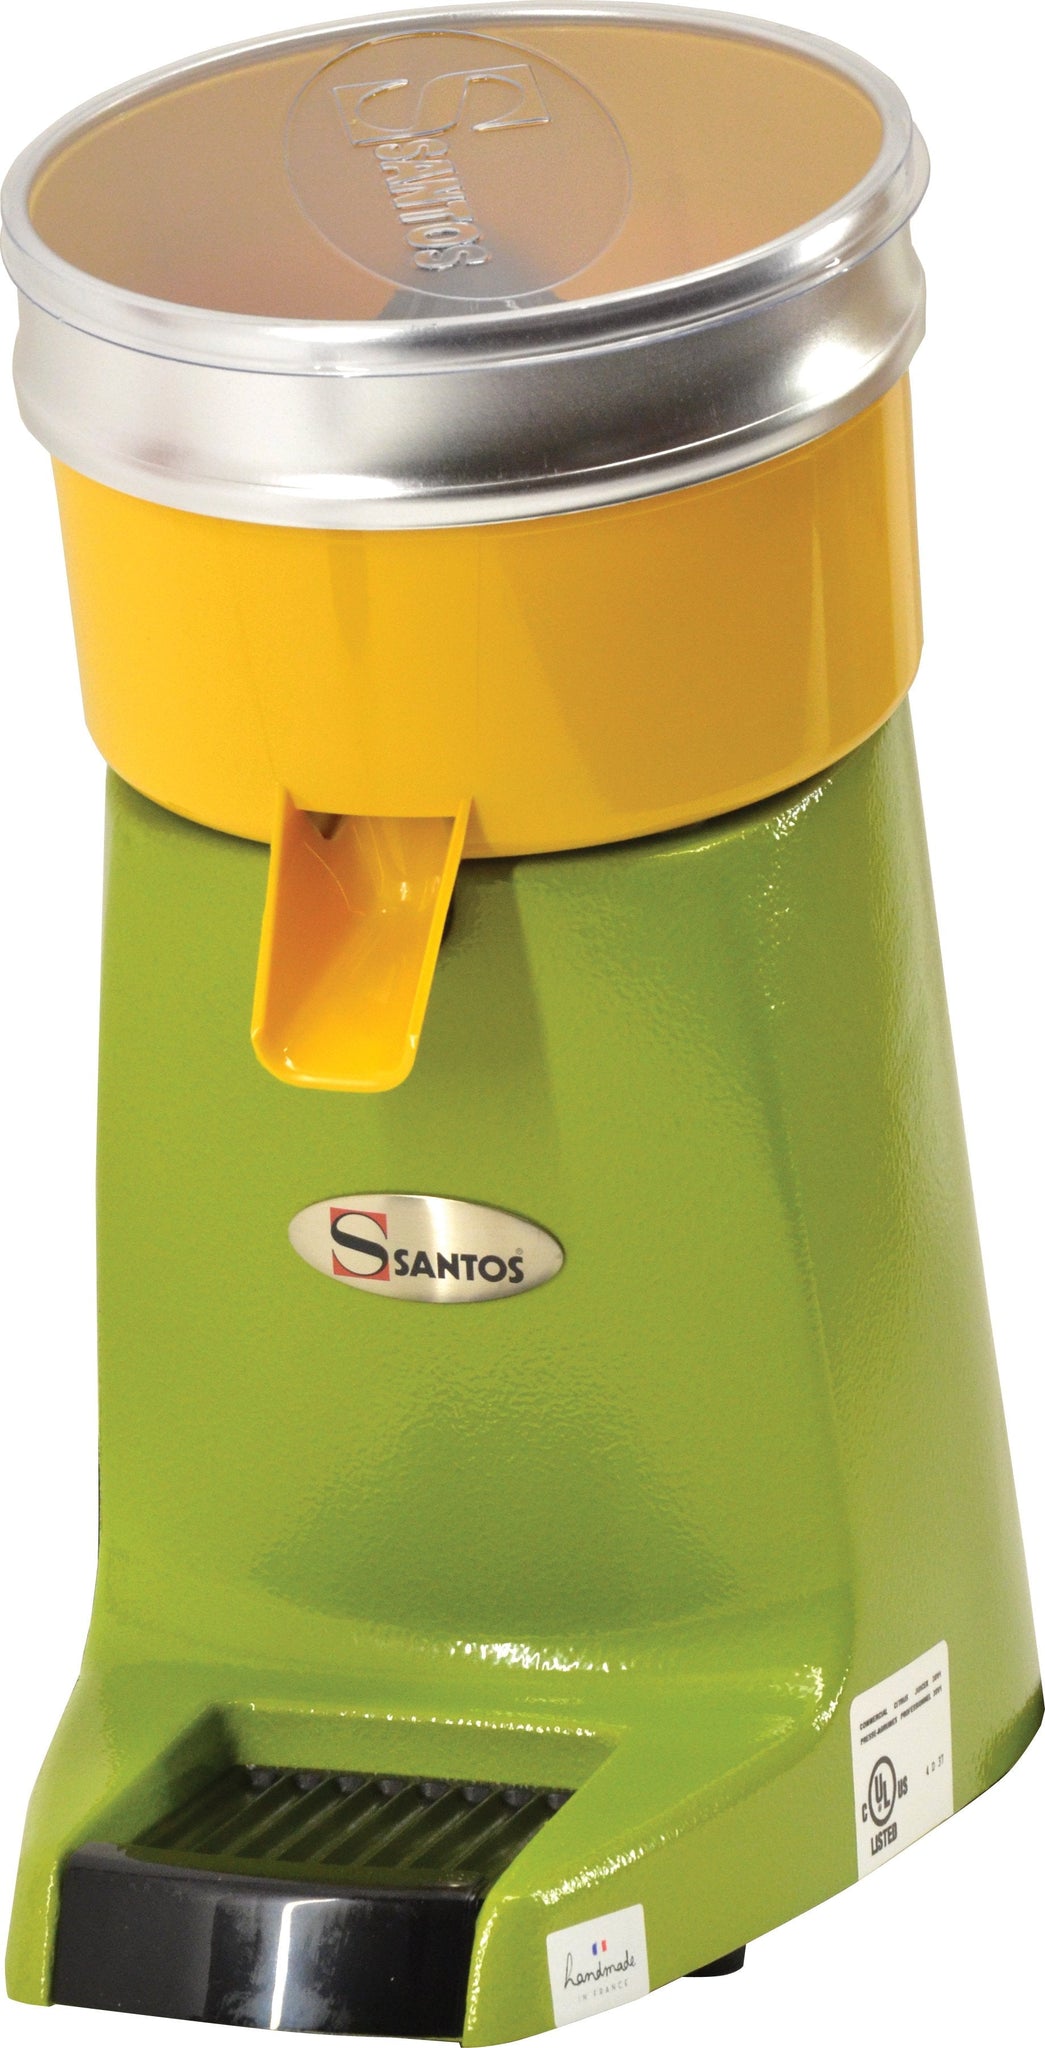 Santos - Green & Yellow Citrus Juicer #38 - 39688